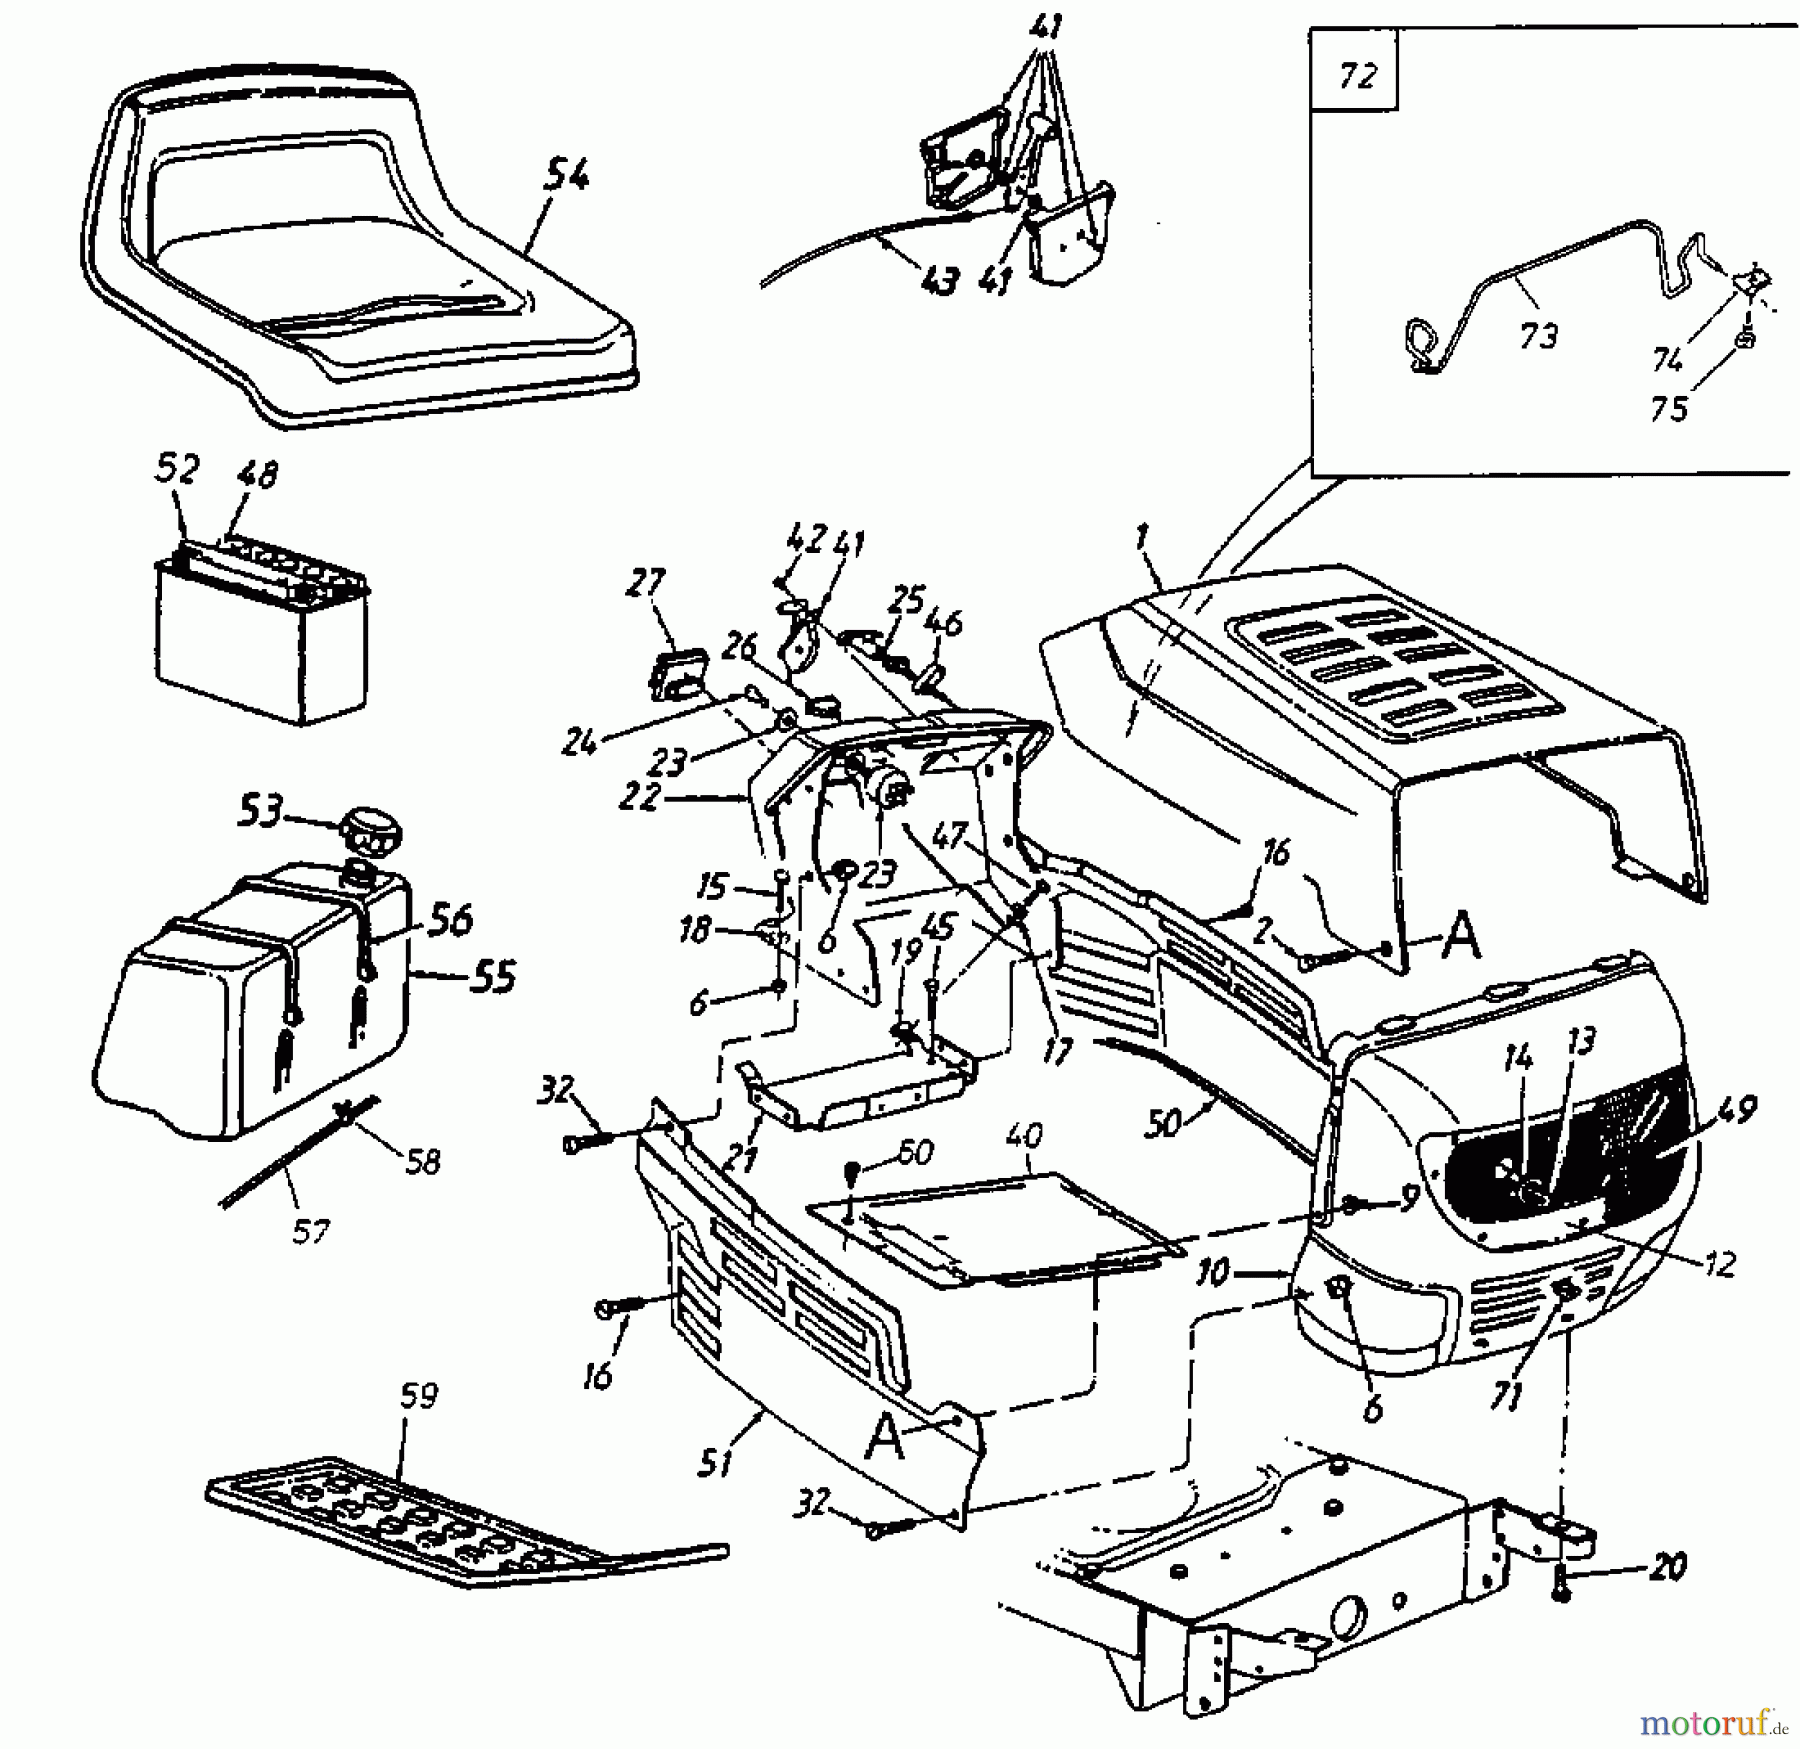  Raiffeisen Rasentraktoren RMH 13-102 13DA763N628  (2000) Motorhaube 3-Style